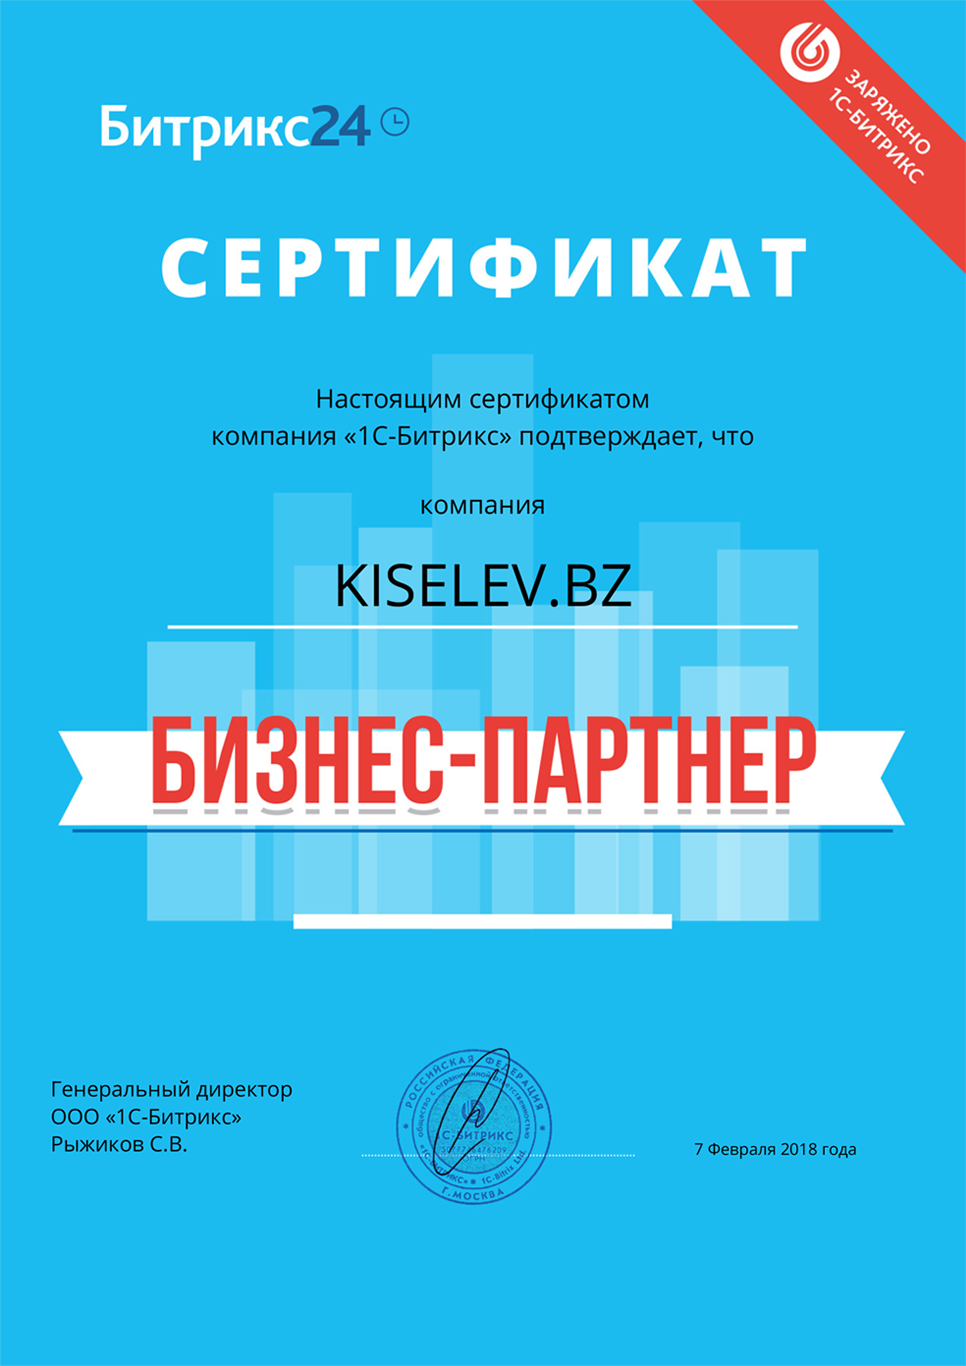 Сертификат партнёра по АМОСРМ в Уссурийске